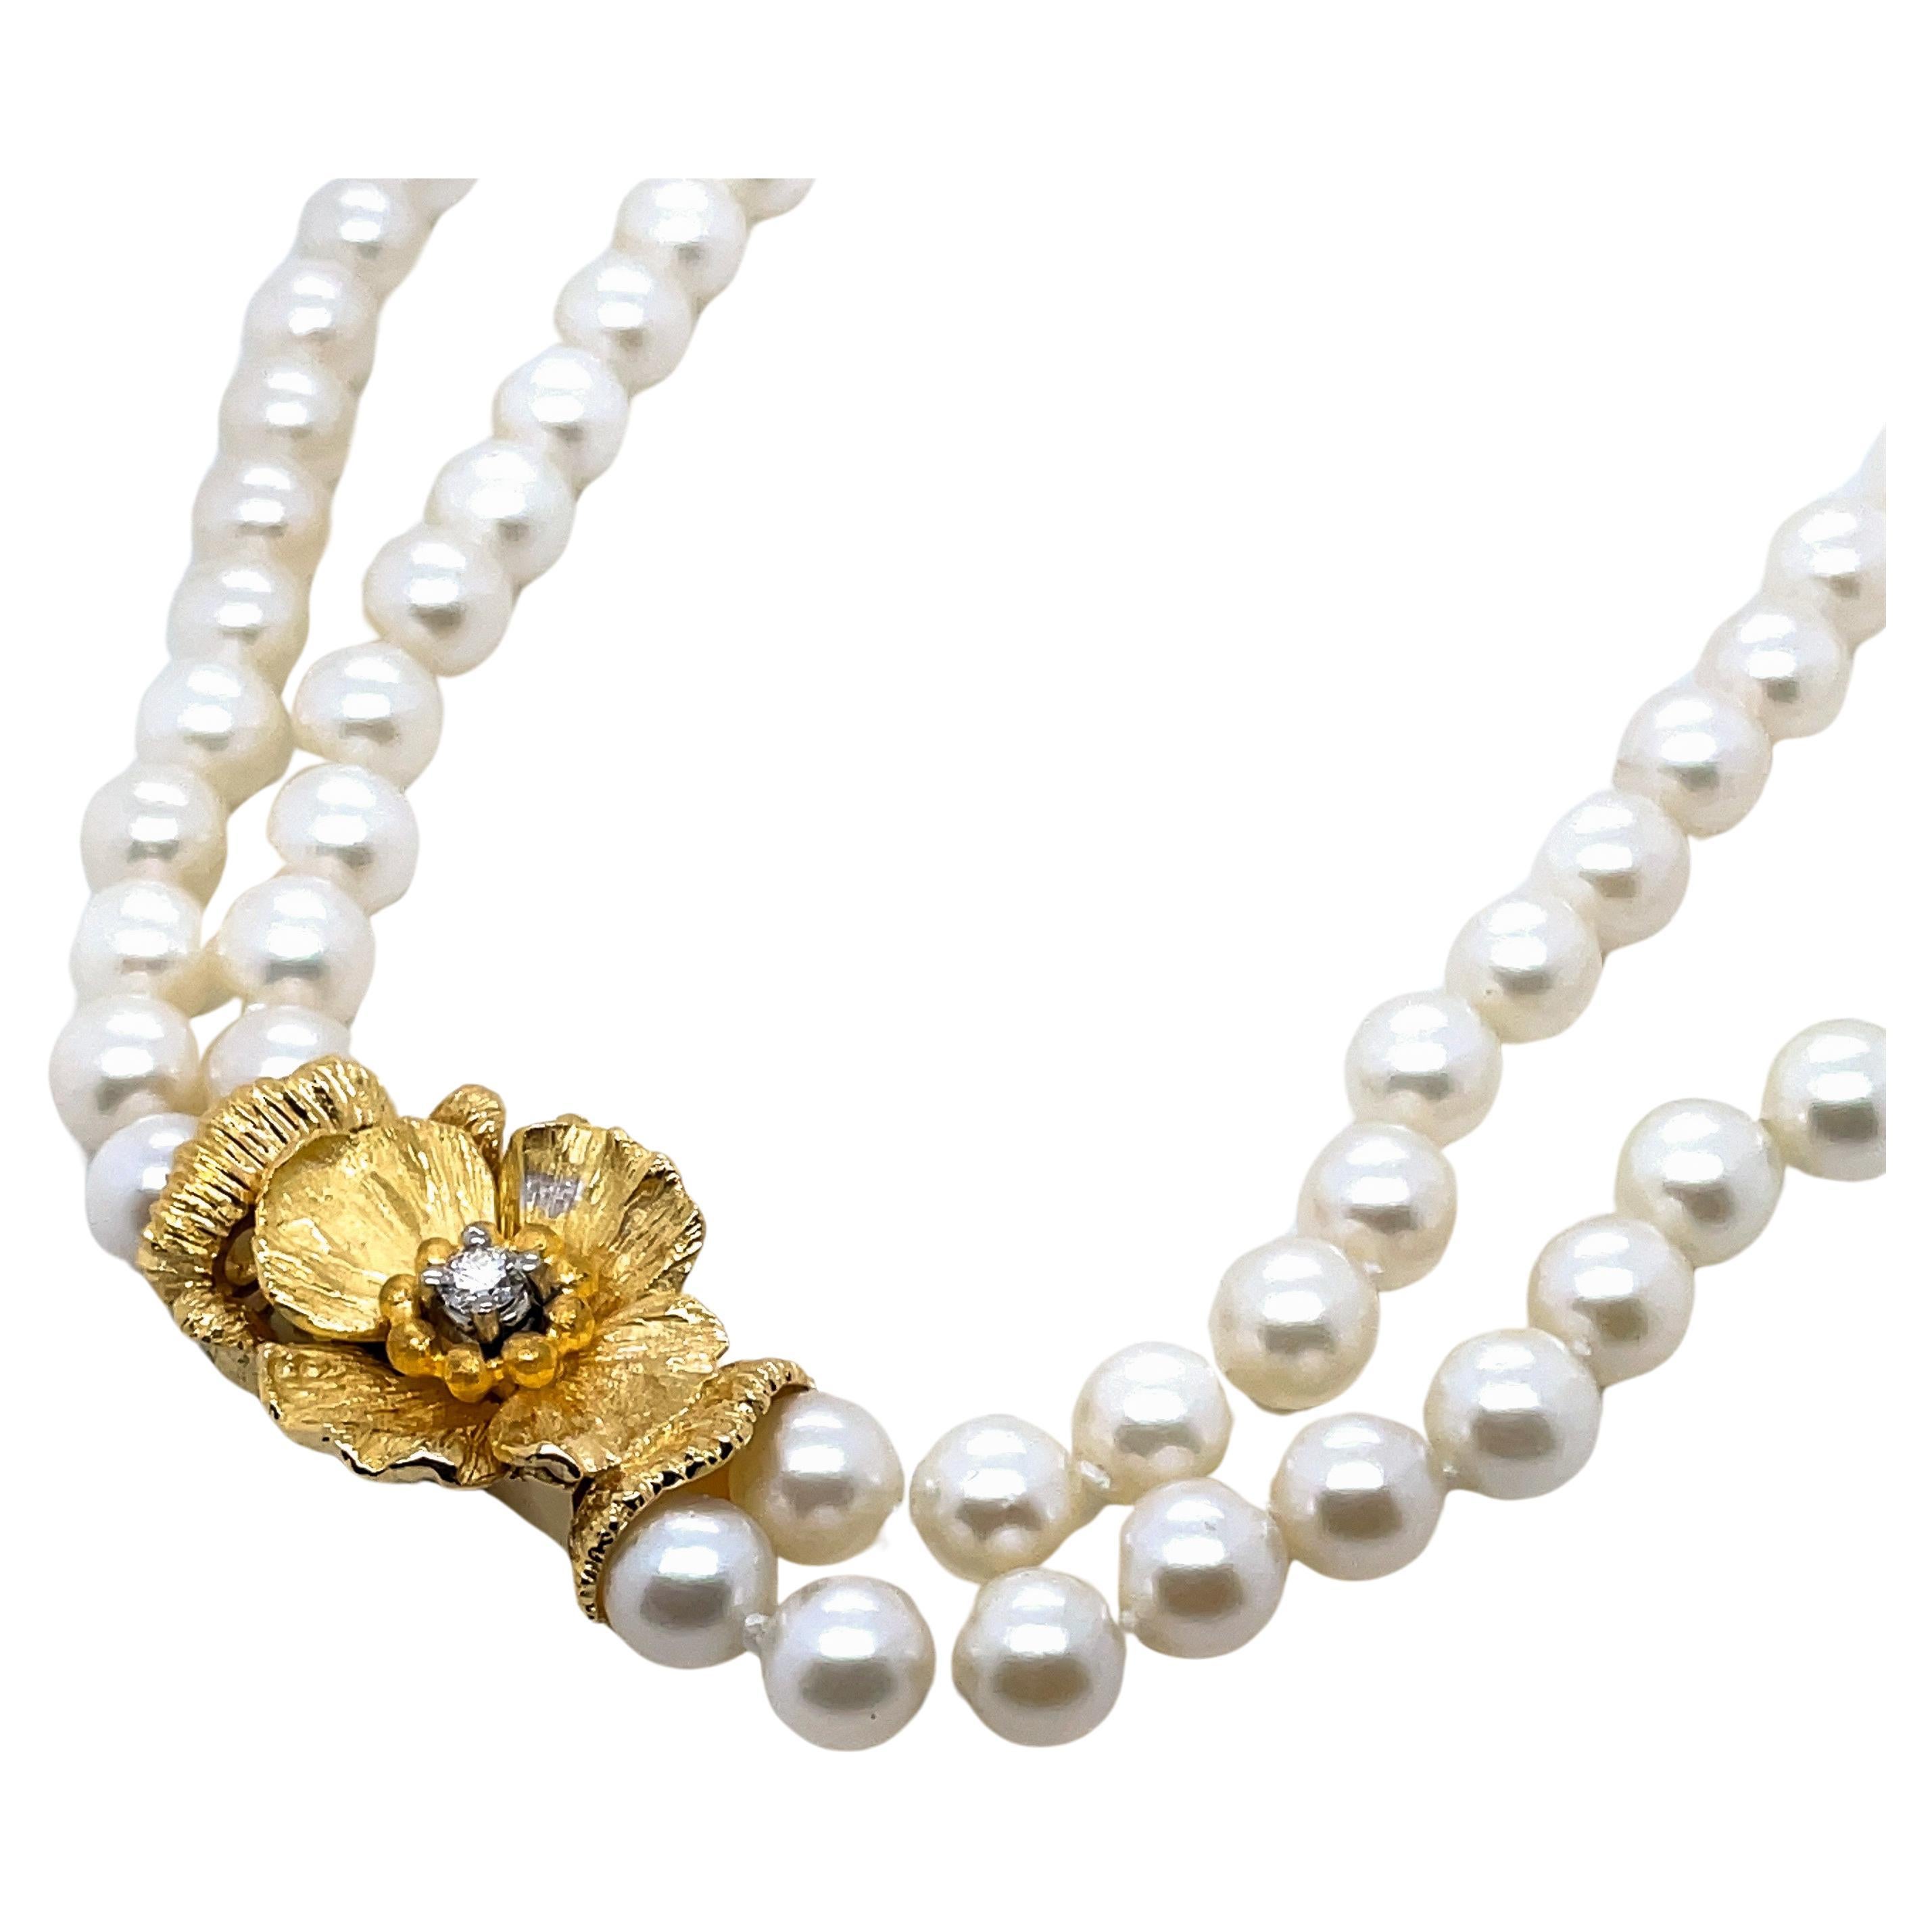 18 Karat Gold Perlen-Diamant-Blumen-Halskette

Diese 15 Zentimeter lange Perlen- und Diamantkette umhüllt Sie mit Luxus, während sie sich anmutig an Ihre Haut schmiegt.

Jede der 116 Zuchtperlen ist ein Zeugnis für die Meisterschaft der Natur und